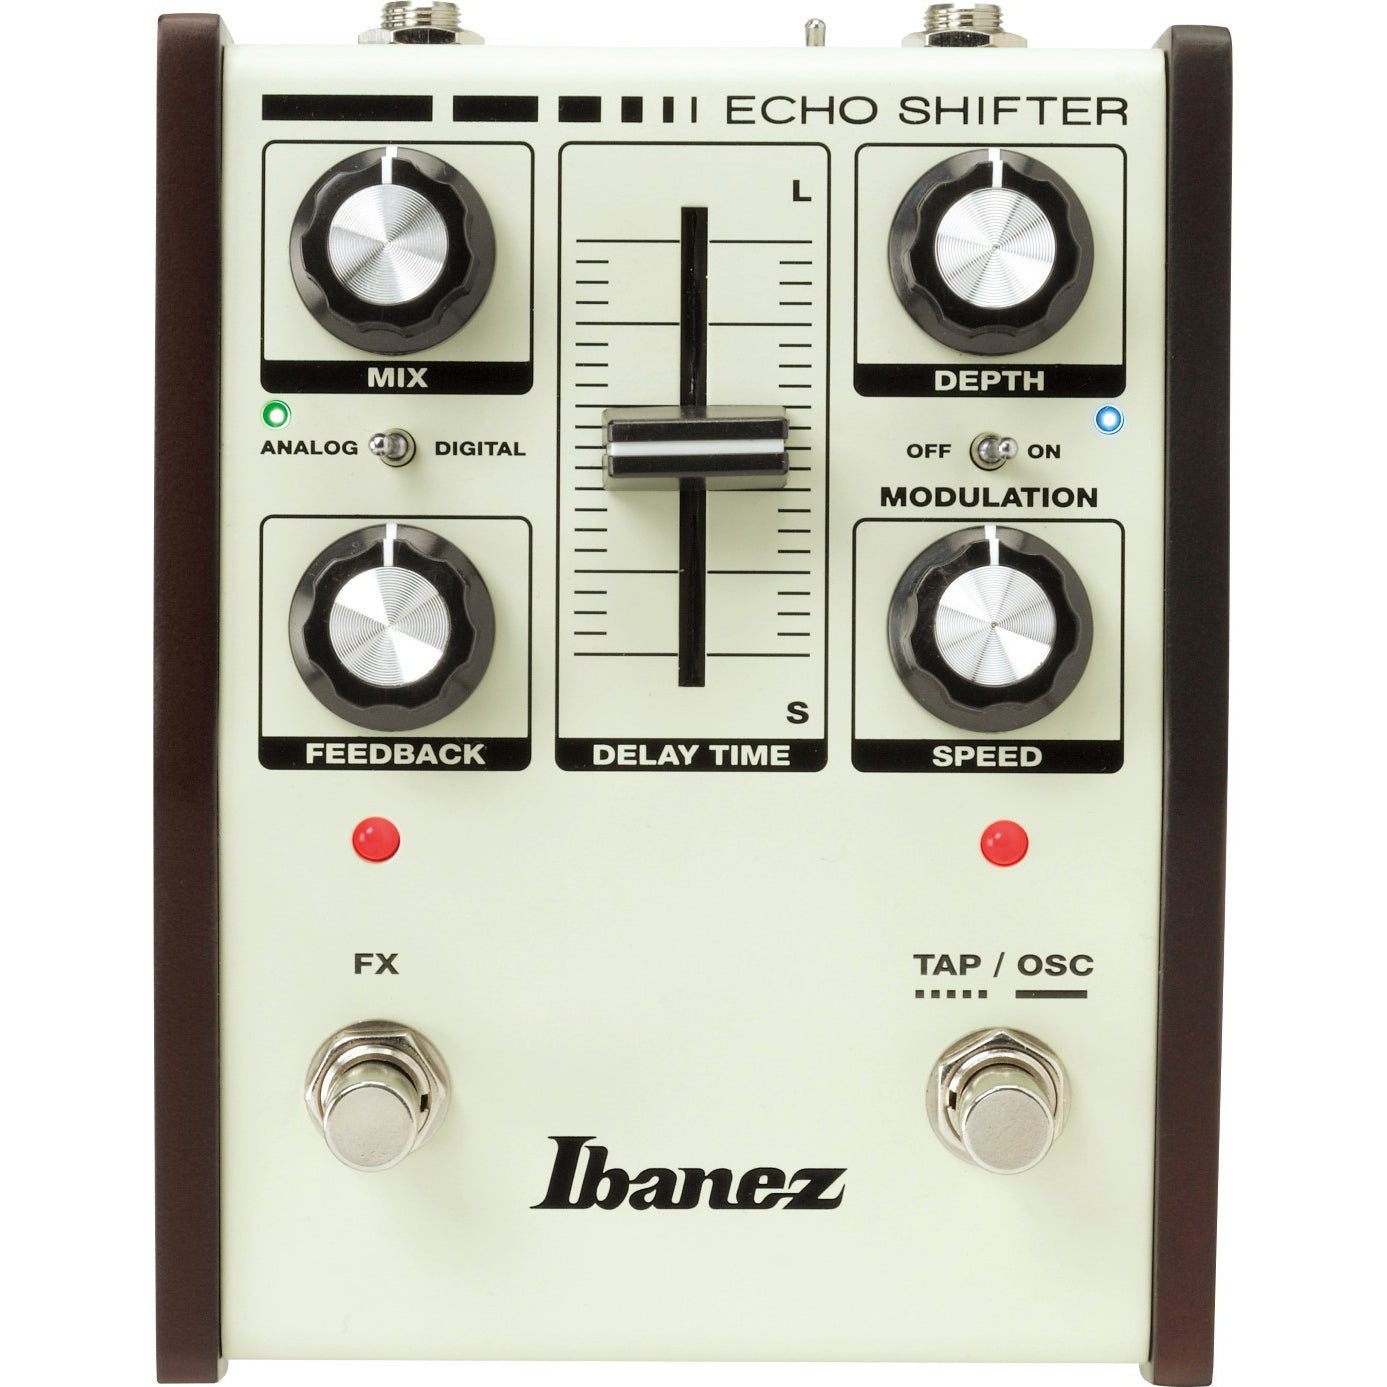 Ibanez ES3 Echo Shifter delay with modulation